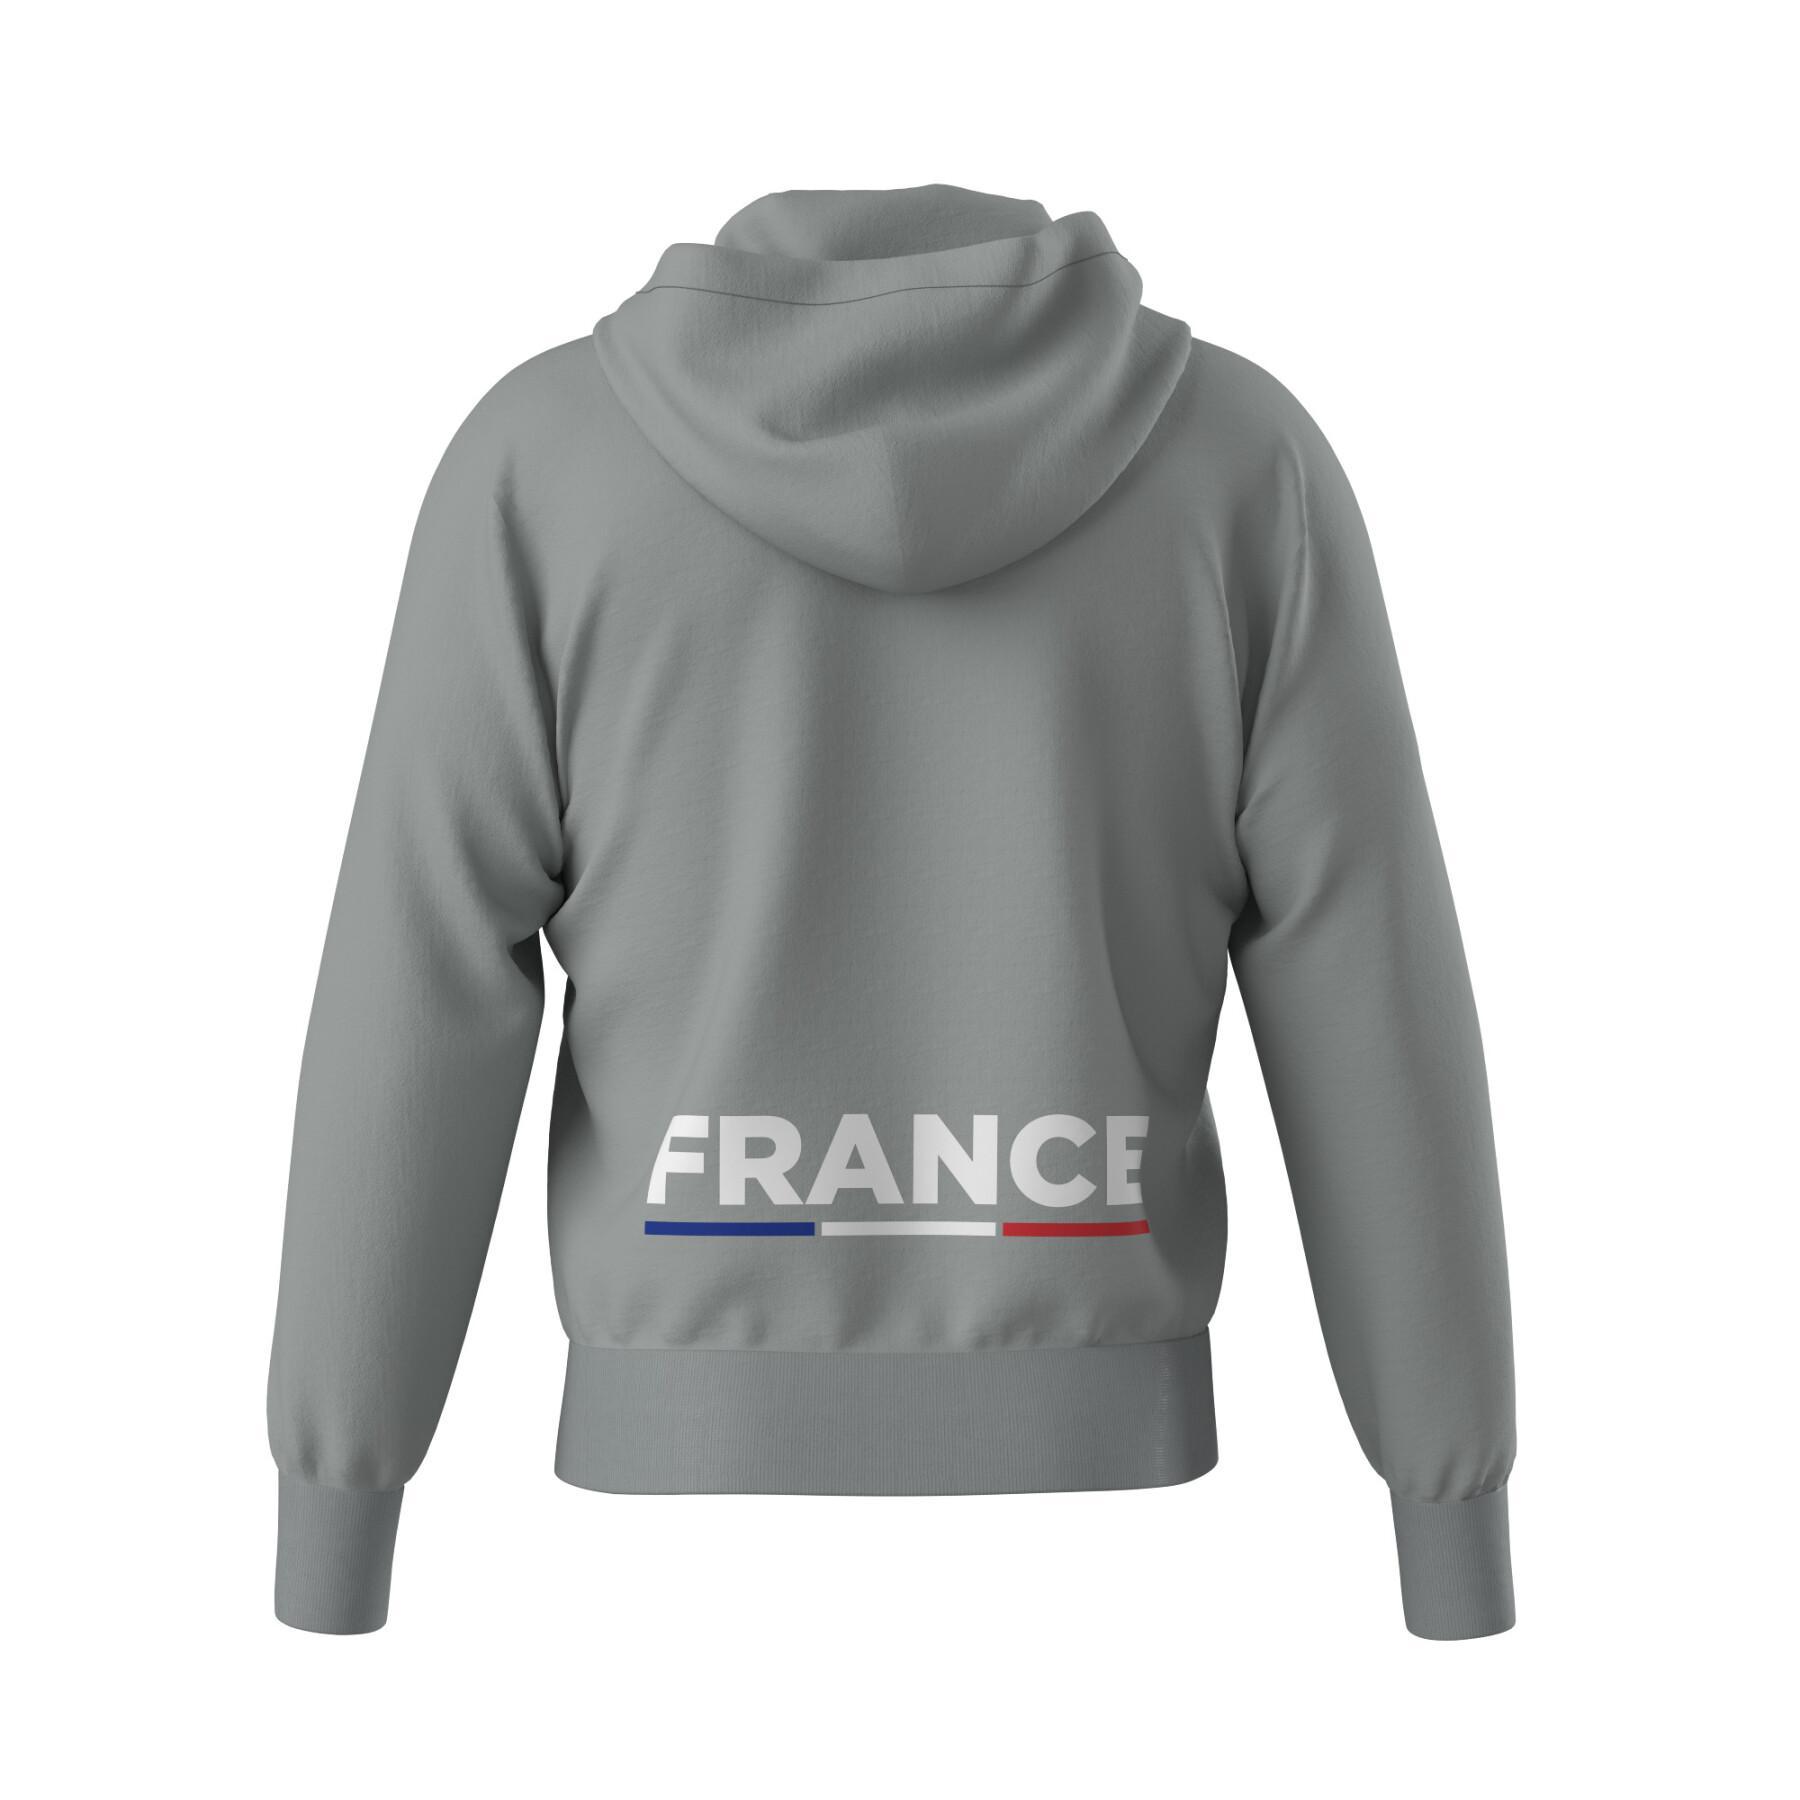 Officieel 3.0 jack met capuchon van het Franse nationale team Frankrijk